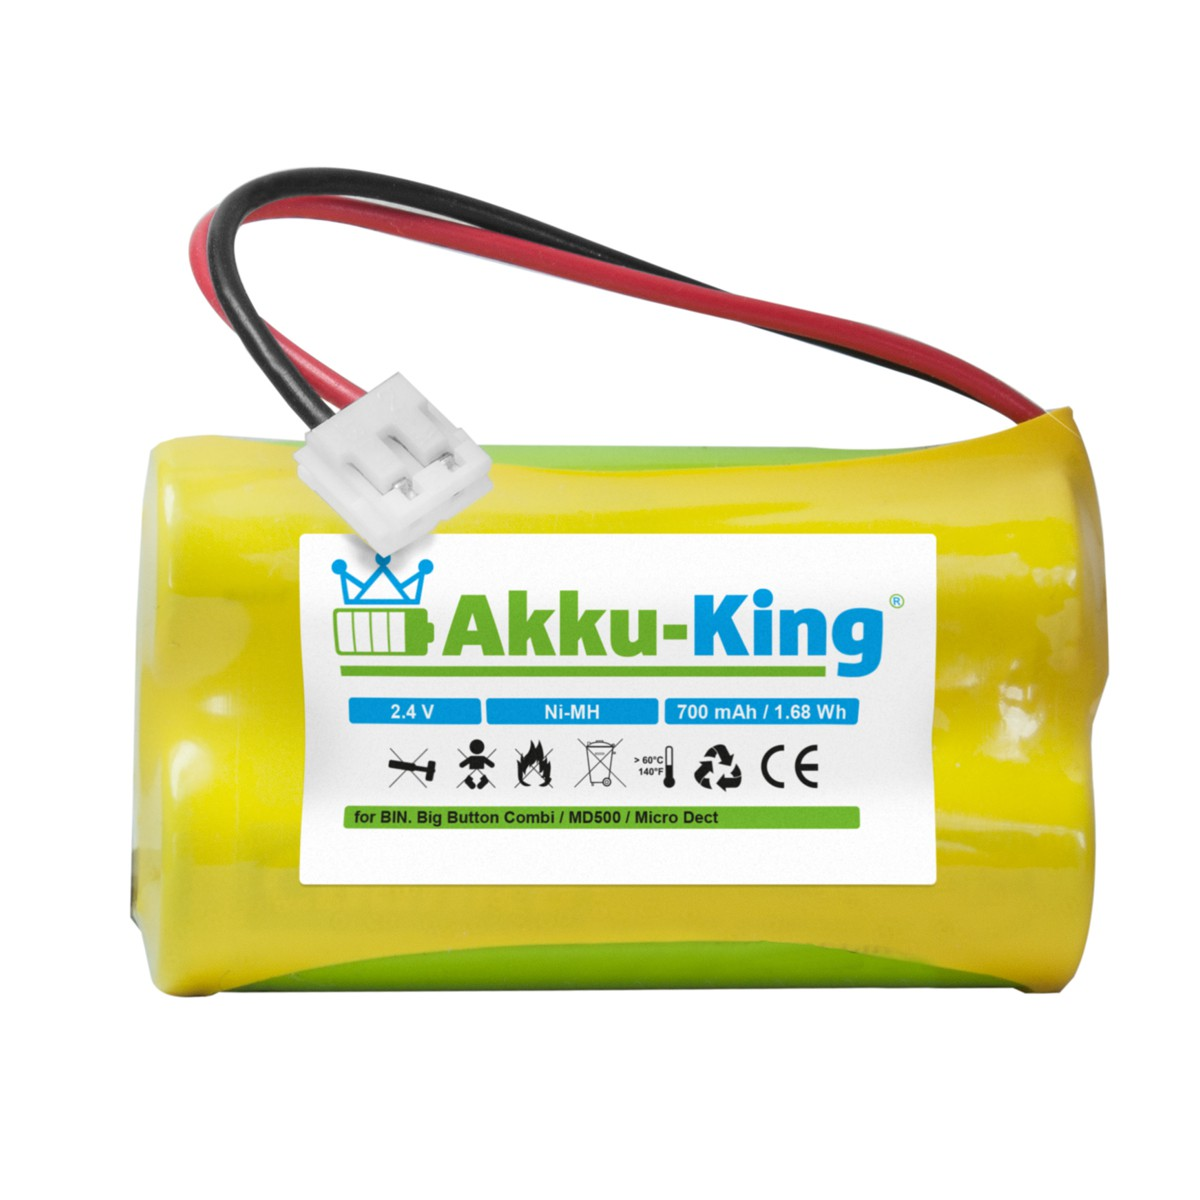 Geräte-Akku, Volt, 700mAh 60AAS2BMJ Akku Binatone AKKU-KING kompatibel Ni-MH mit 2.4